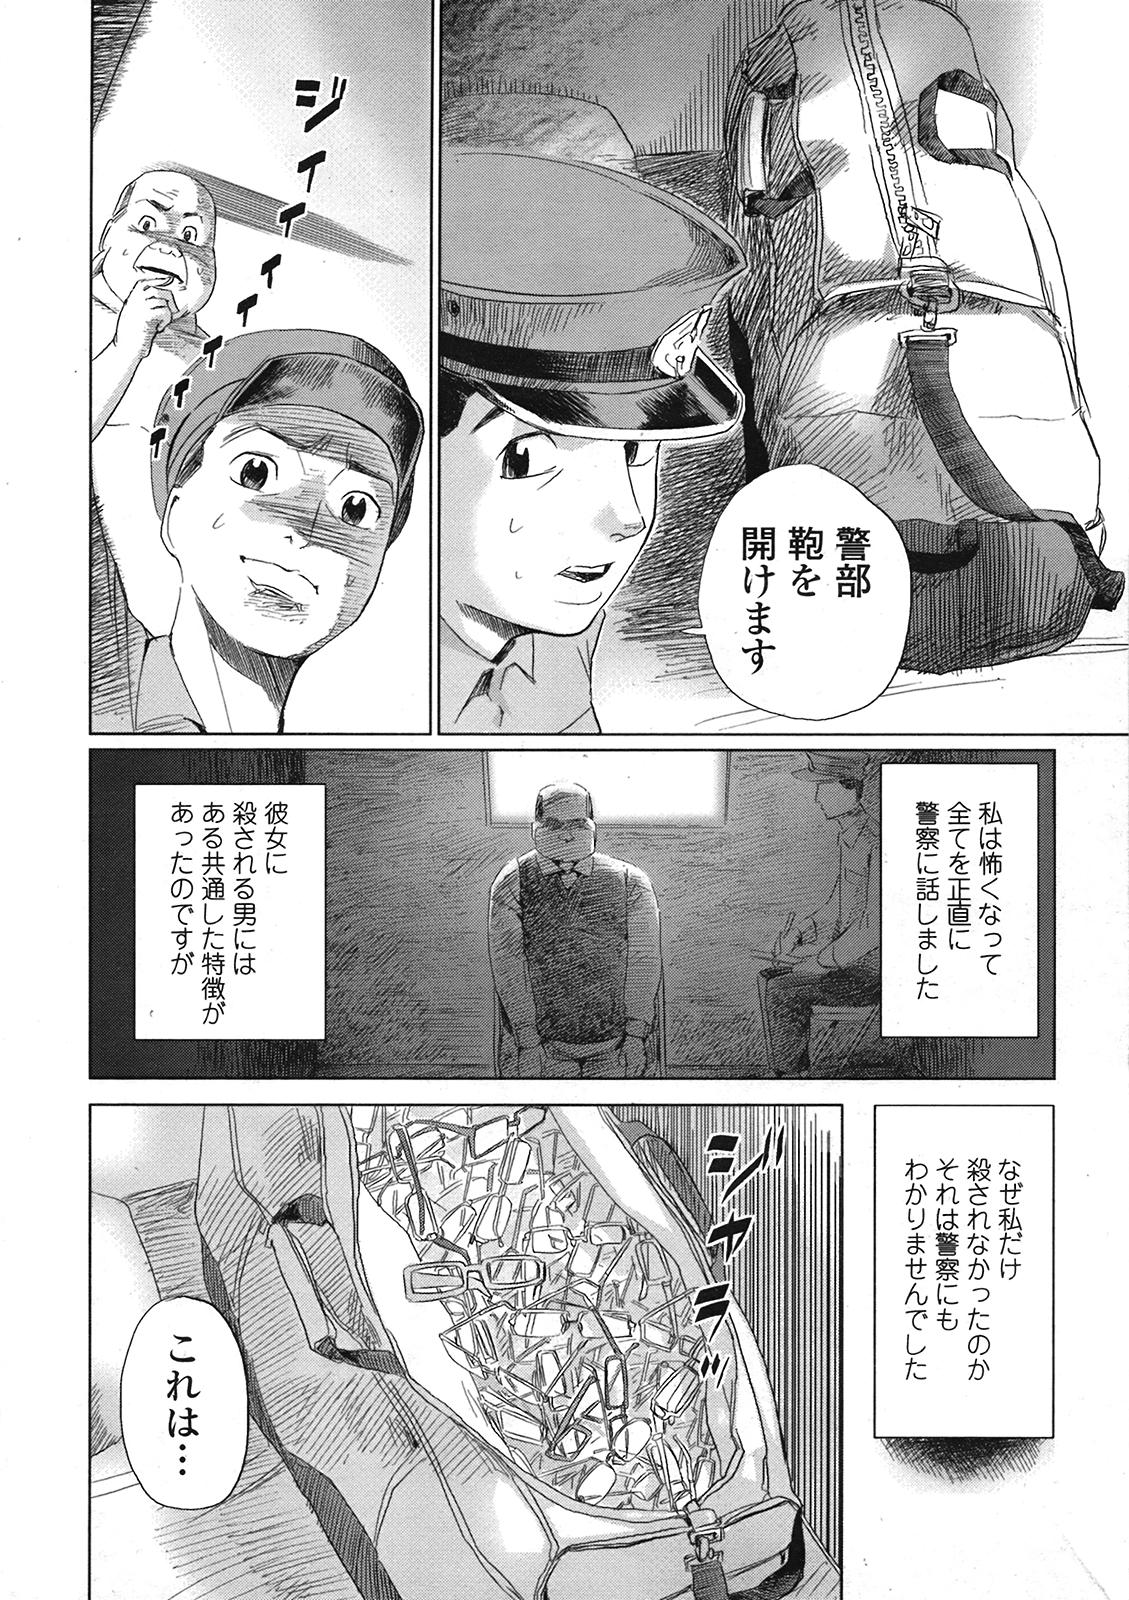 COMIC天魔 コミックテンマ 2009年1月号 VOL.128